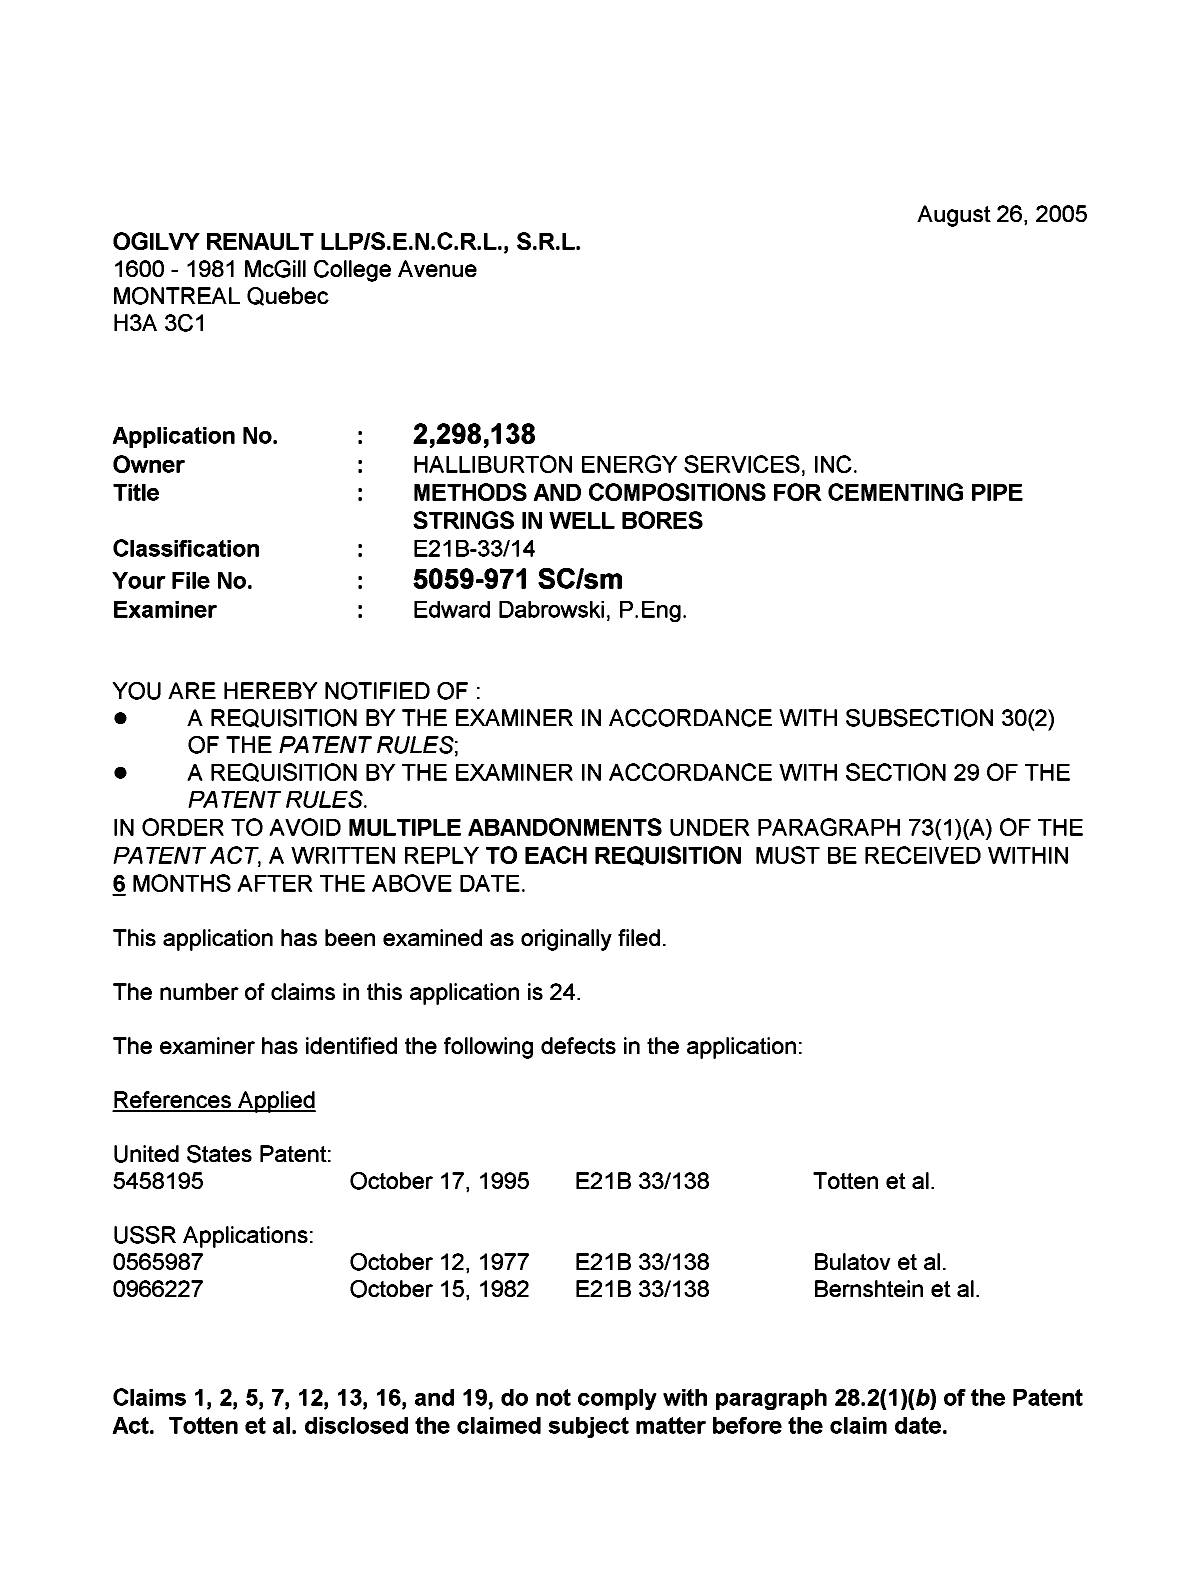 Document de brevet canadien 2298138. Poursuite-Amendment 20050826. Image 1 de 3